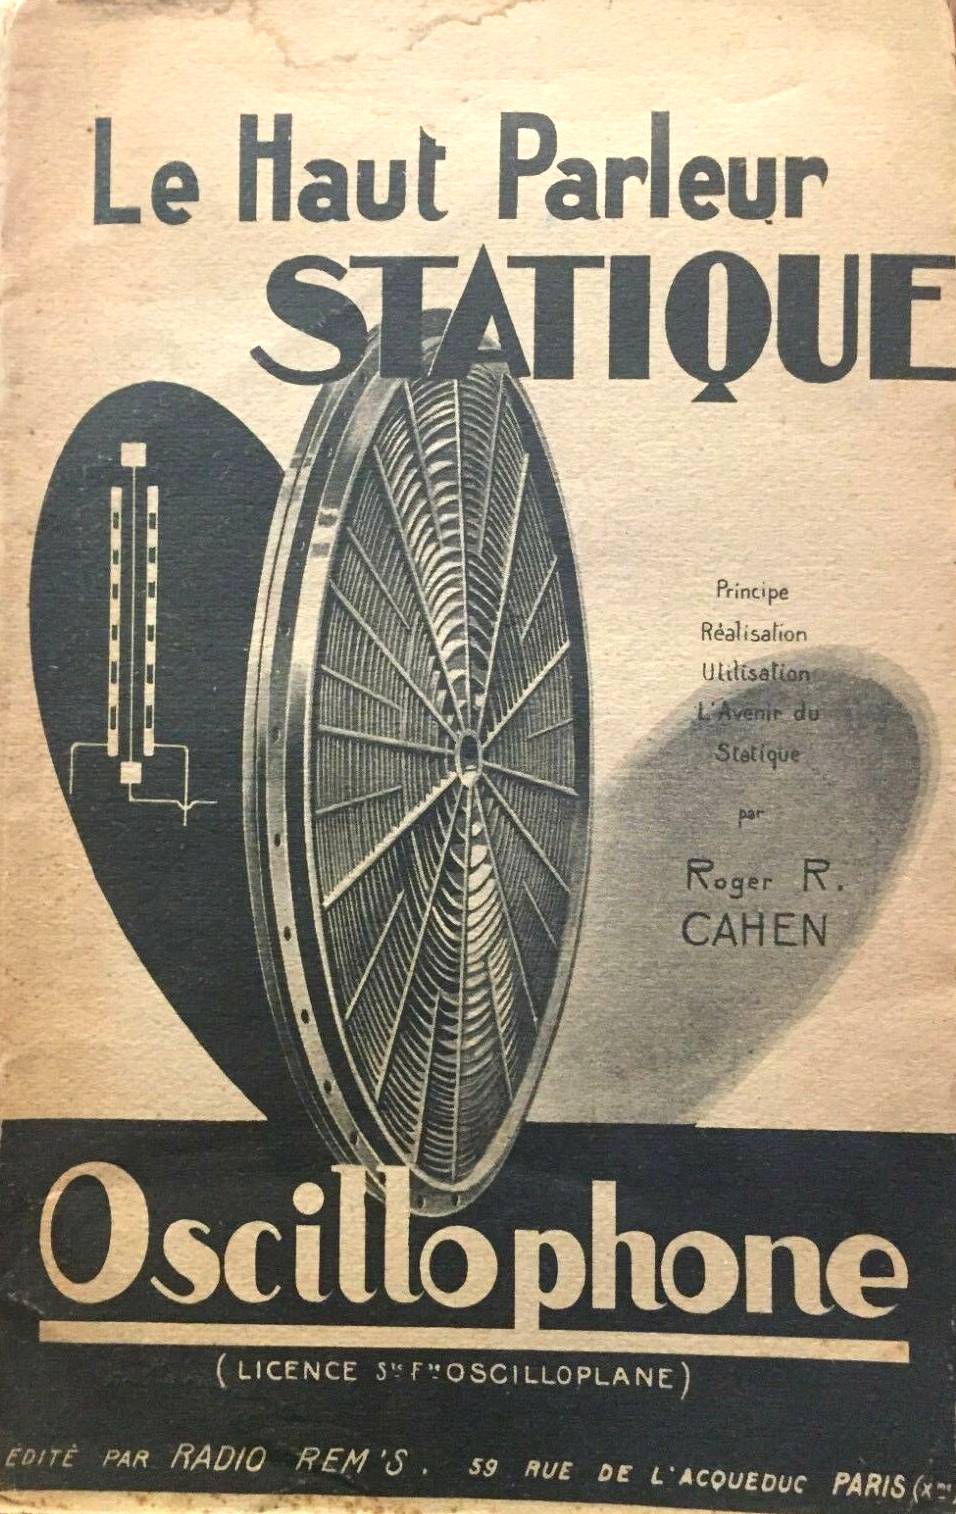 Oscillophone - Haut-Parleur Statique - Société Française Oscilloplane - Livre de Roger R. Cahen